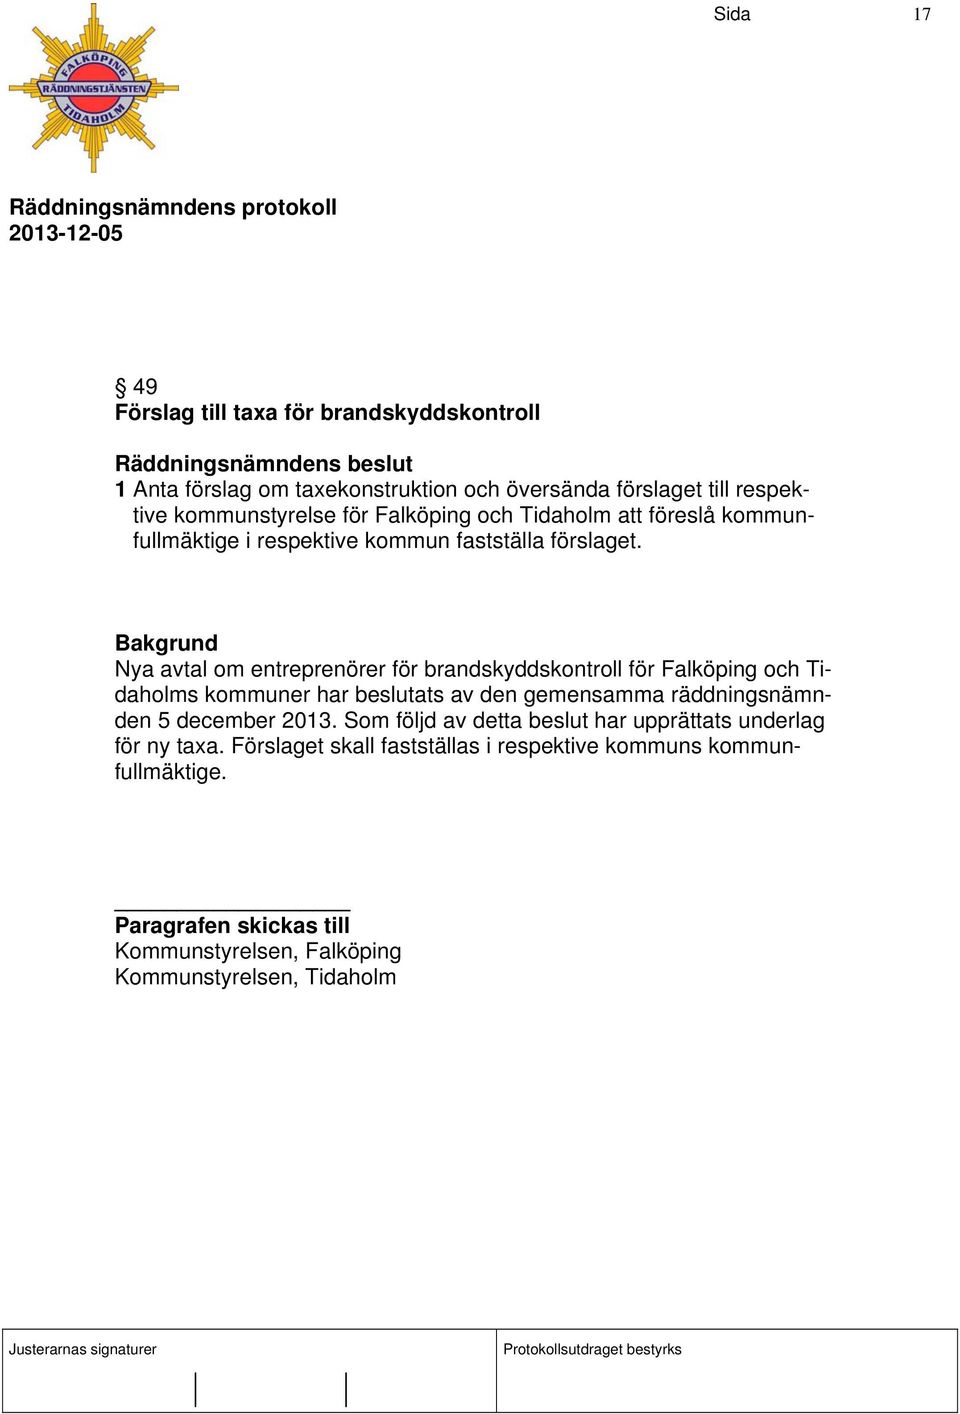 Nya avtal om entreprenörer för brandskyddskontroll för Falköping och Tidaholms kommuner har beslutats av den gemensamma räddningsnämnden 5